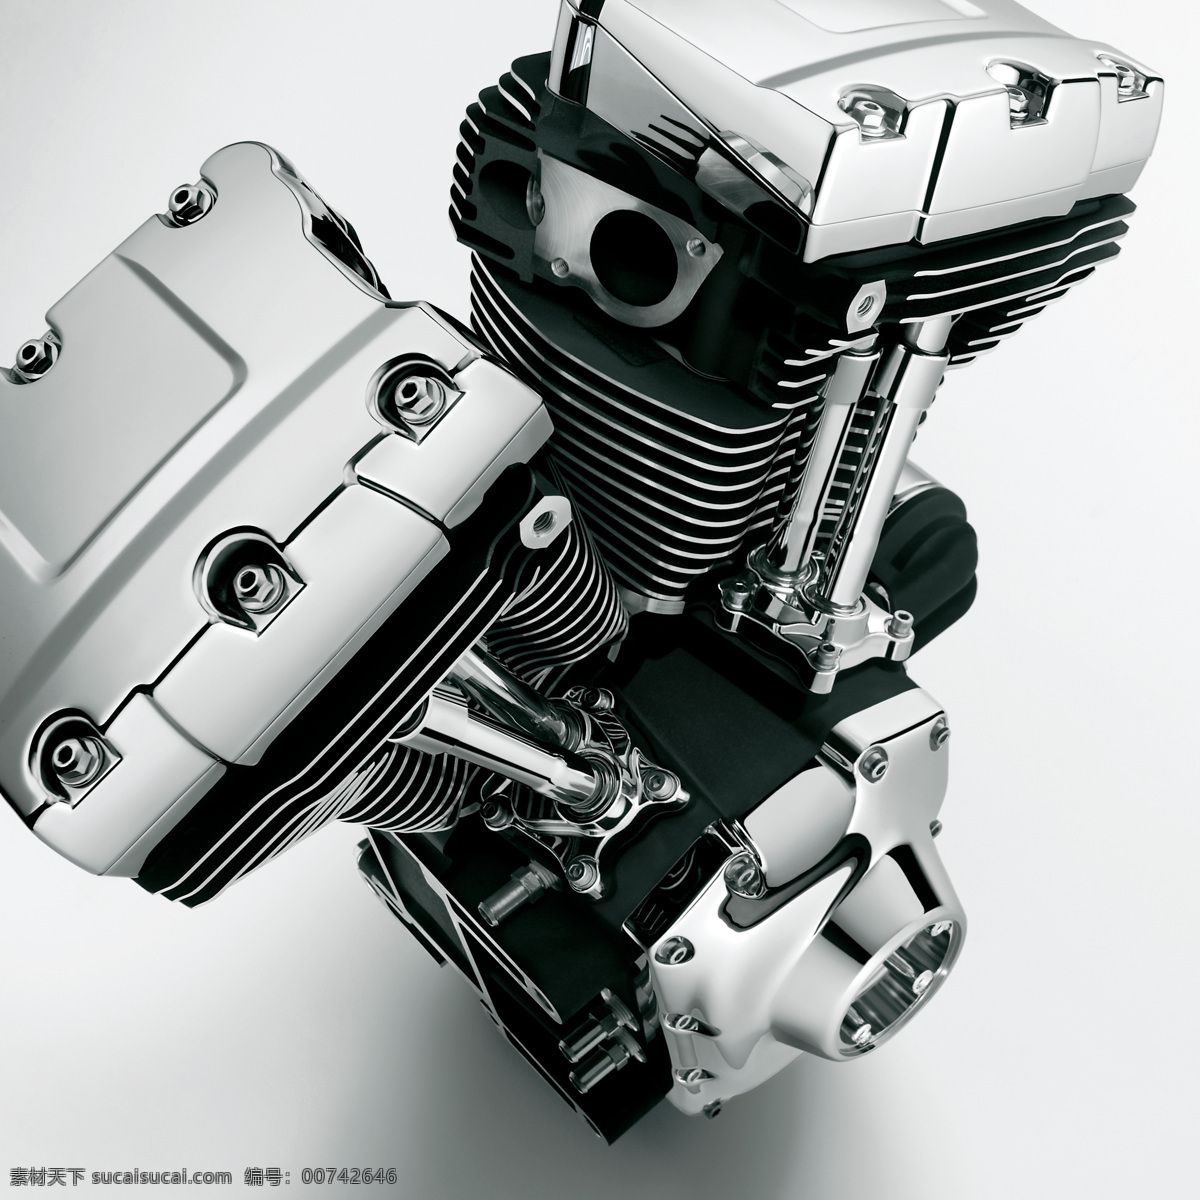 哈雷摩托引擎 哈雷 引擎 摩托 机械 高精度 大图 动力 power 工业生产 现代科技